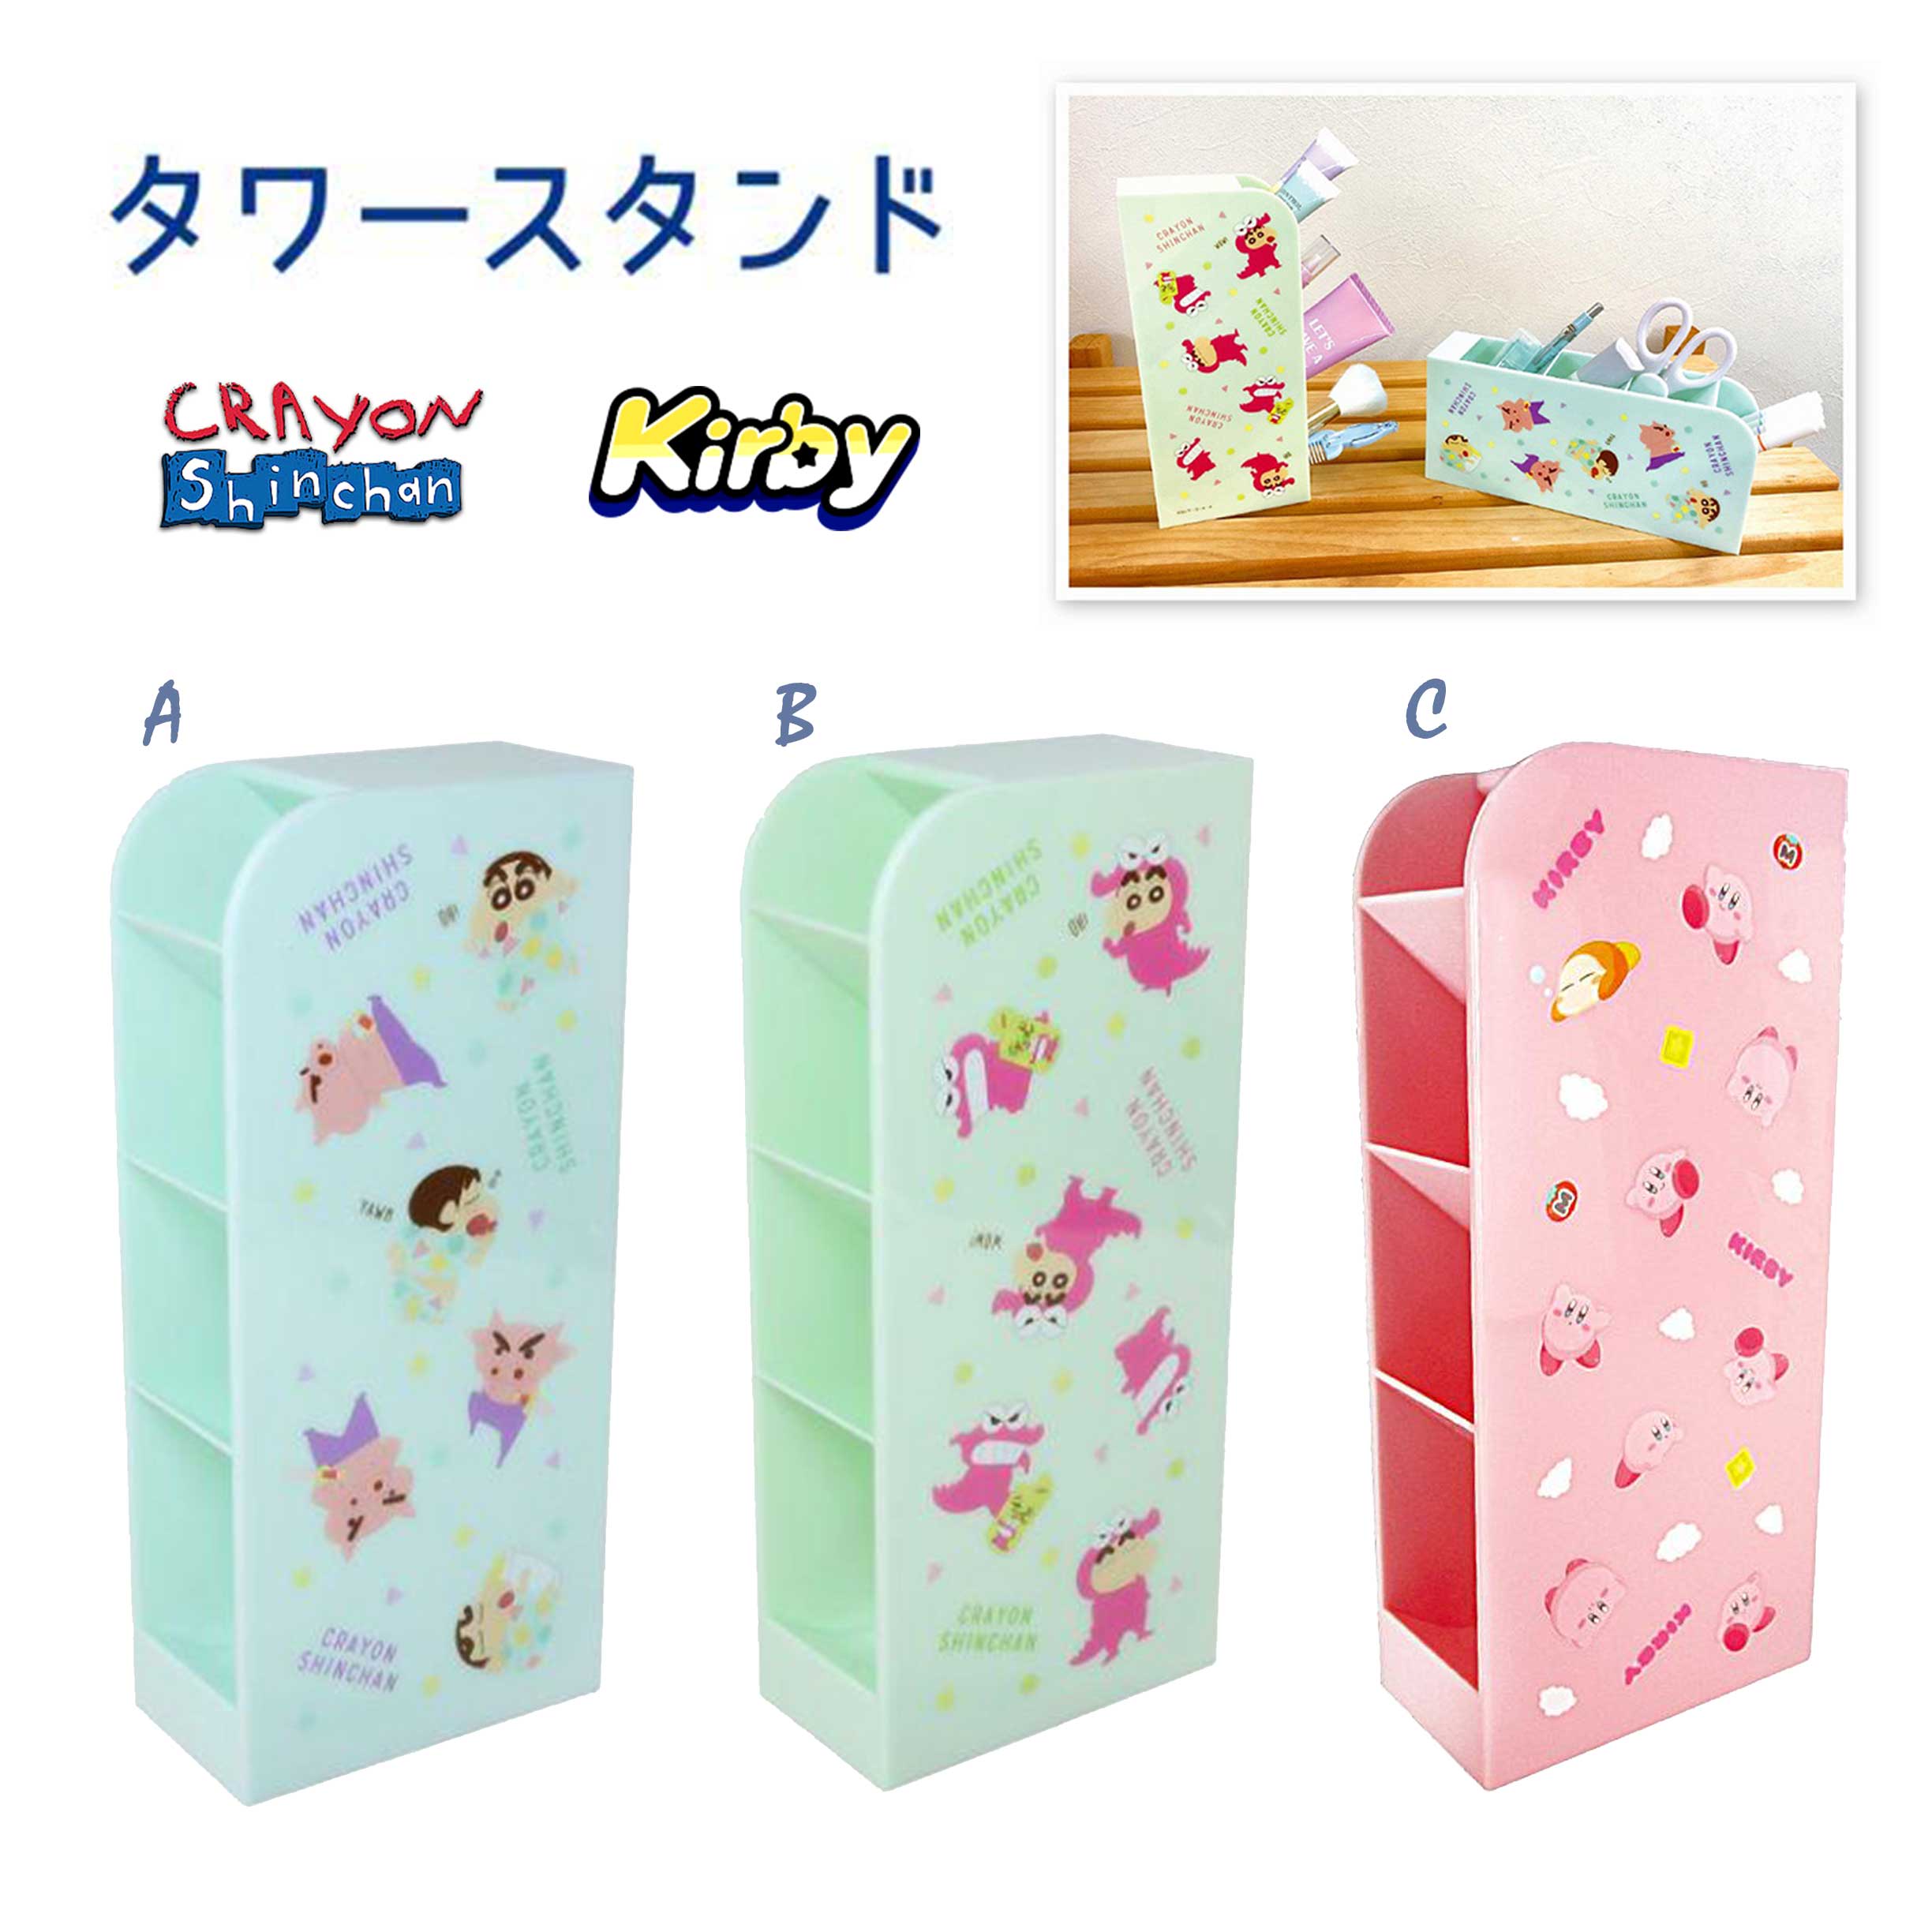 桌上型斜插直式筆筒 四層-Kirby 星之卡比 蠟筆小新 Crayon Shin Chain クレヨンしんちゃん 日本進口正版授權